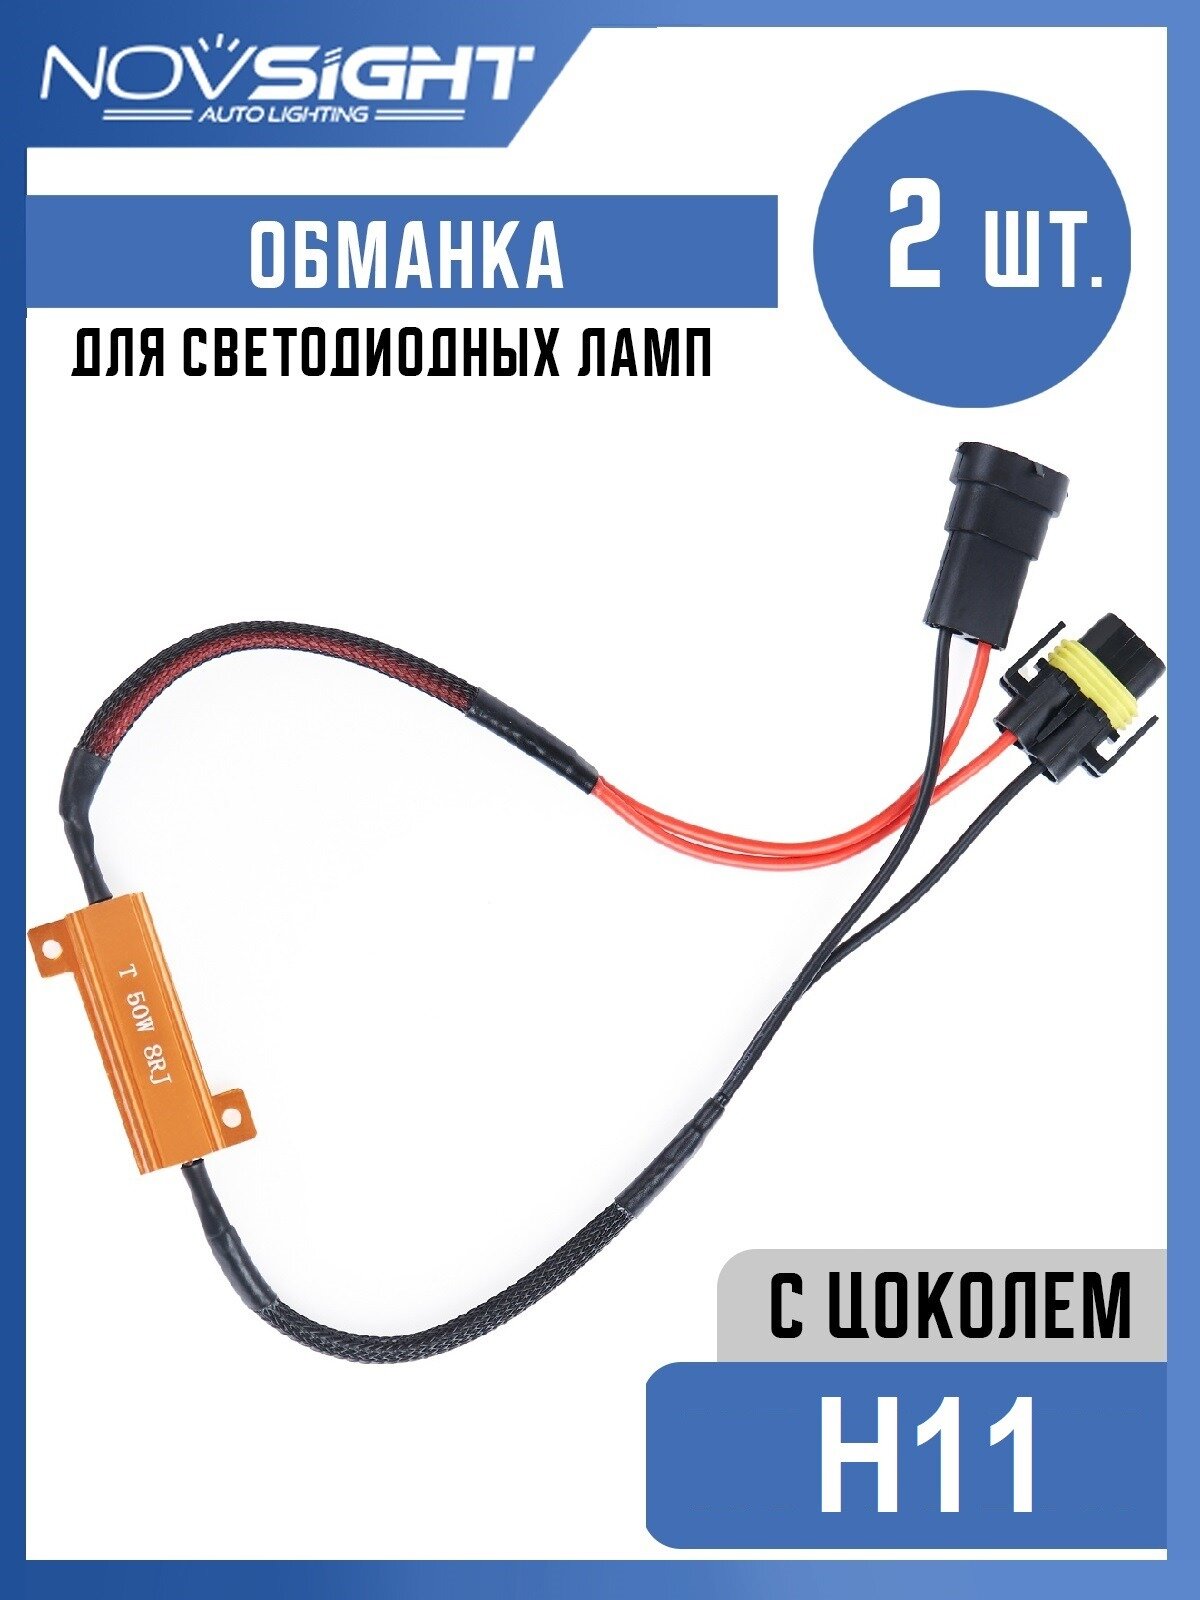 Обманка Canbus для ламп H11 цоколь PGJ19-2 50Вт 8 Ом 2шт Нагрузочный резистор светодиодных